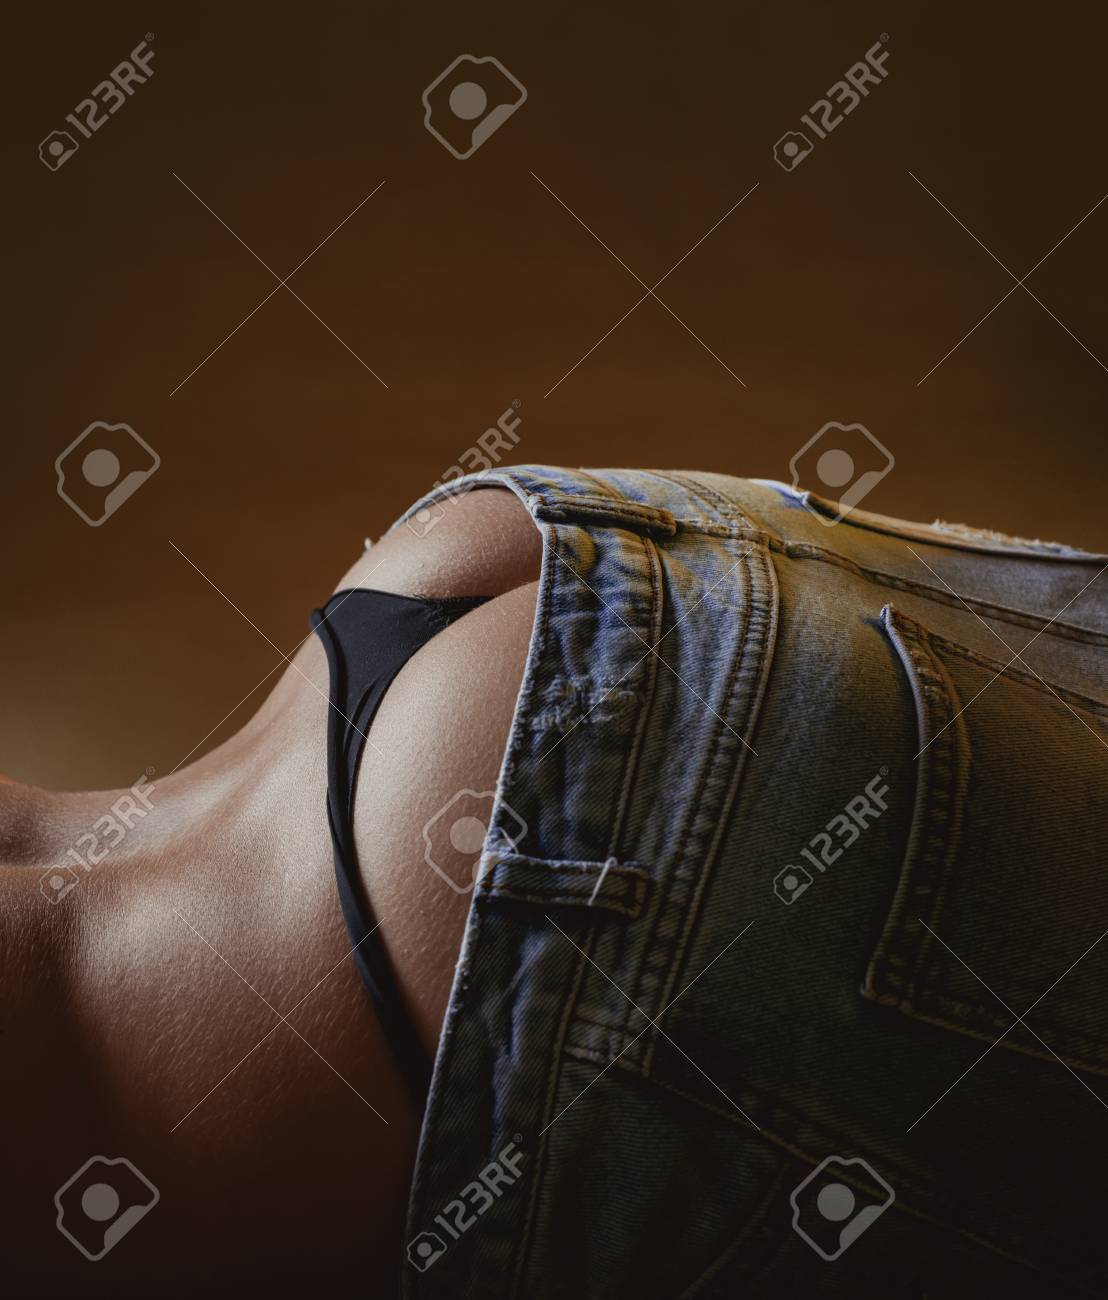 darren ee recommends Hot Ass In Panties